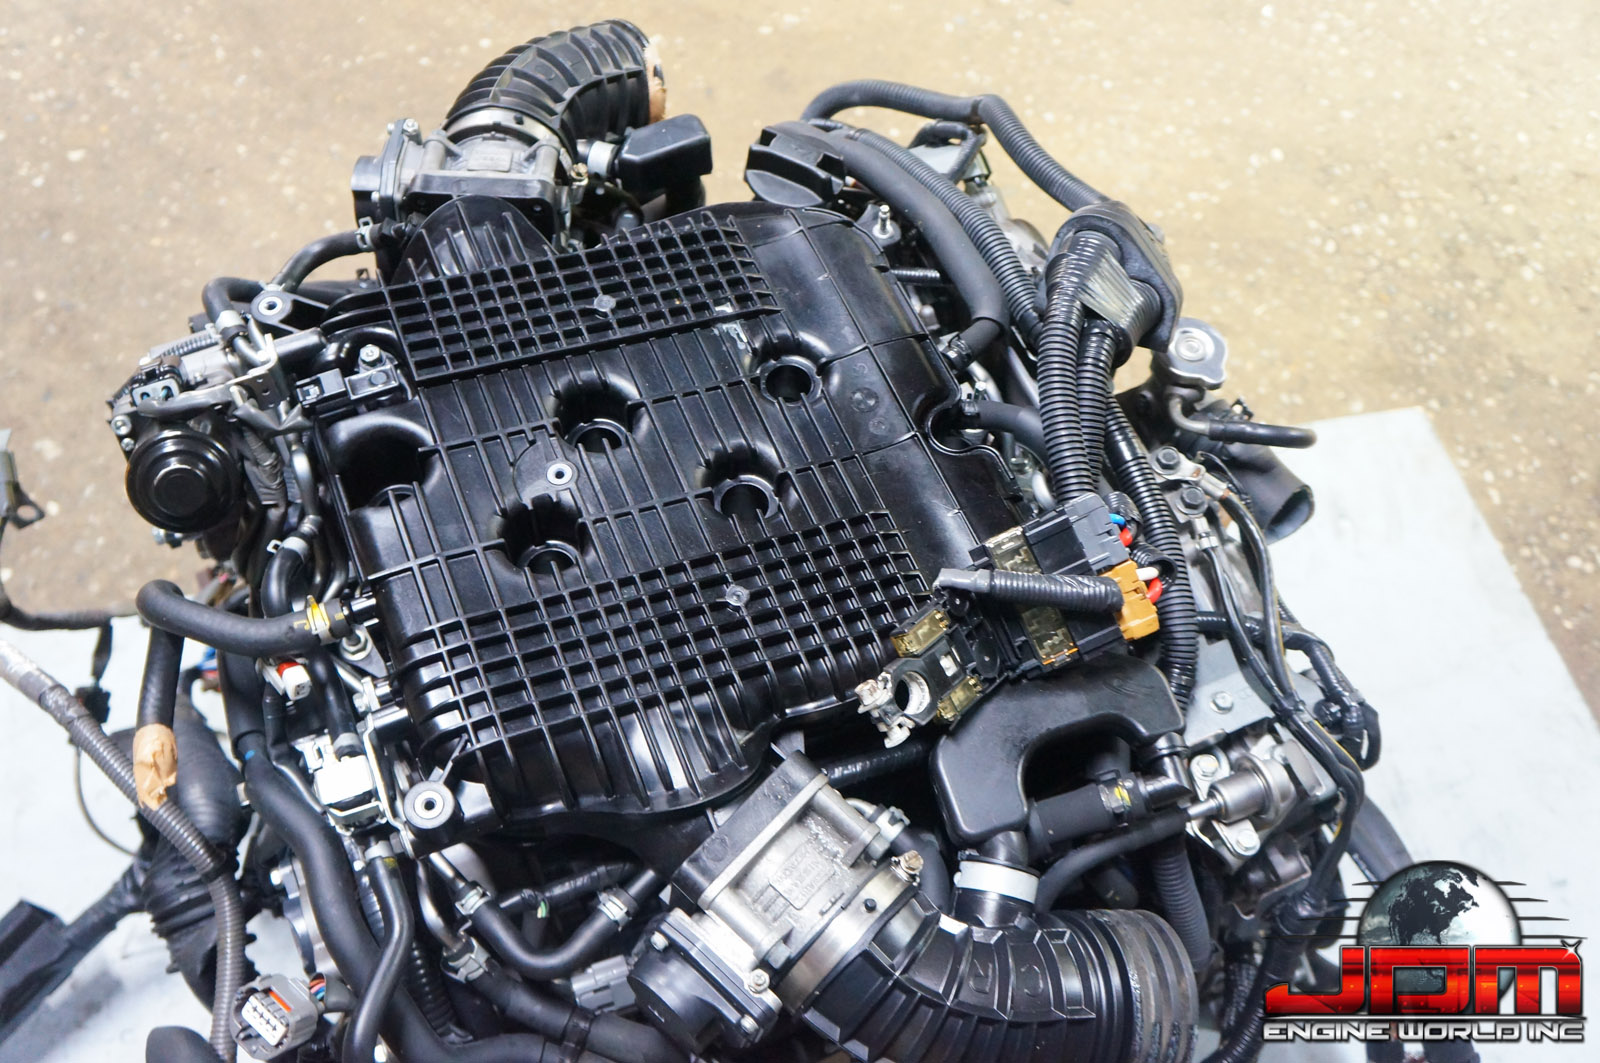 09-13 NISSAN 370Z INFINITI G37 M37 VQ37HR VVEL 3.7L V6 ENGINE JDM VQ37 MOTOR